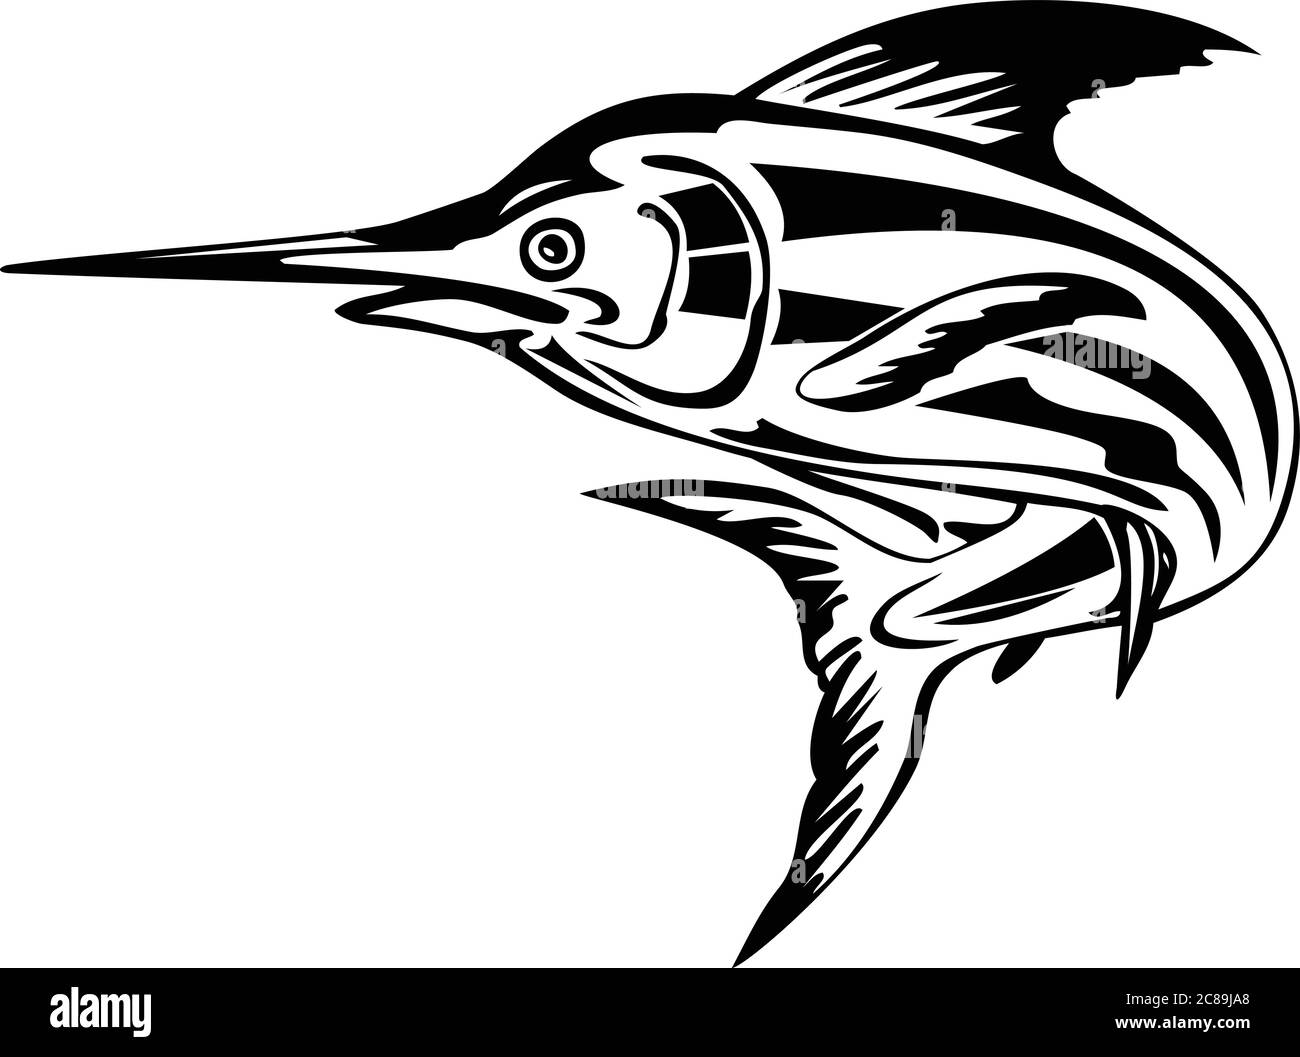 Ilustración de estilo retro de una aguja azul del Atlántico, una especie de aguja endémica del Océano Atlántico, nadando y saltando hacia arriba en negro y. Ilustración del Vector